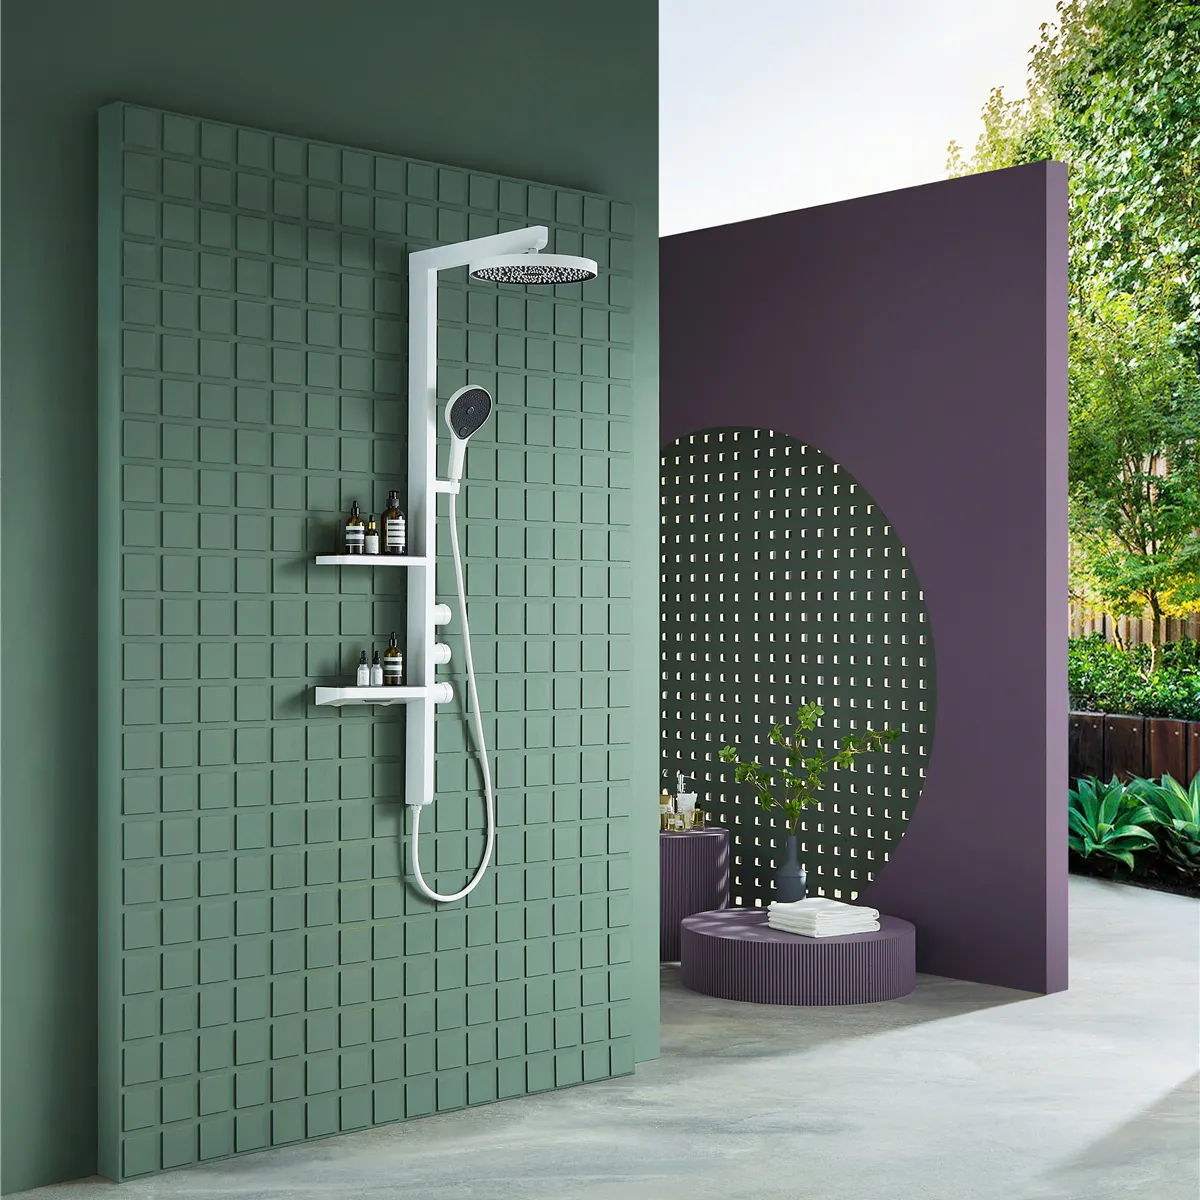 Luxo Novo Design De Parede De Latão Sistema De Chuveiro Branco Banheiro Chuva Chuveiro Torneiras Misturadores Set Com Alta Qualidade